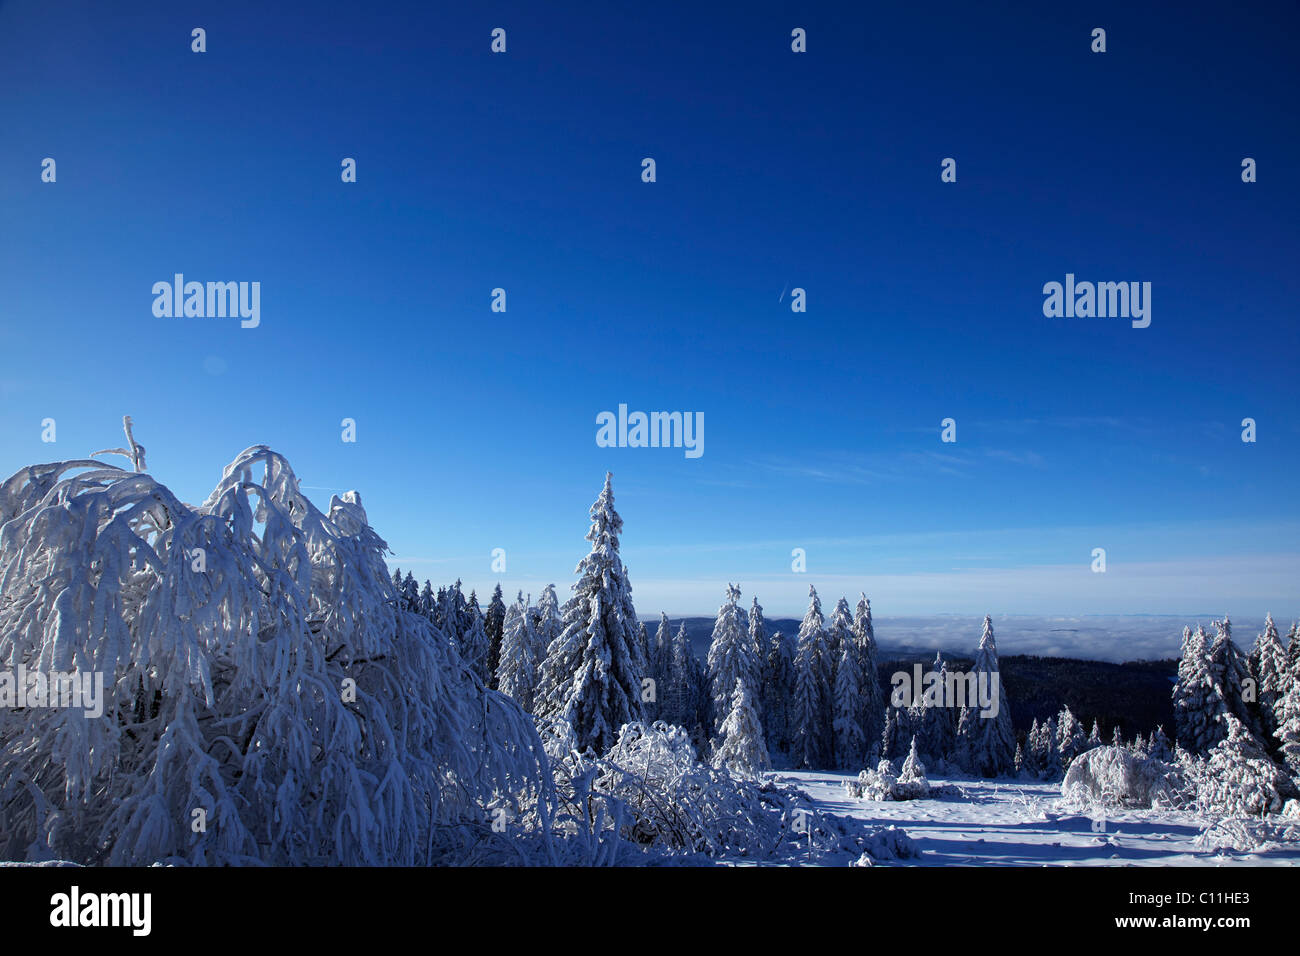 Verschneite Tannen Bäume inmitten einer verschneiten Landschaft, winter, Schwarzwald, Baden-Württemberg, Deutschland, Europa Stockfoto